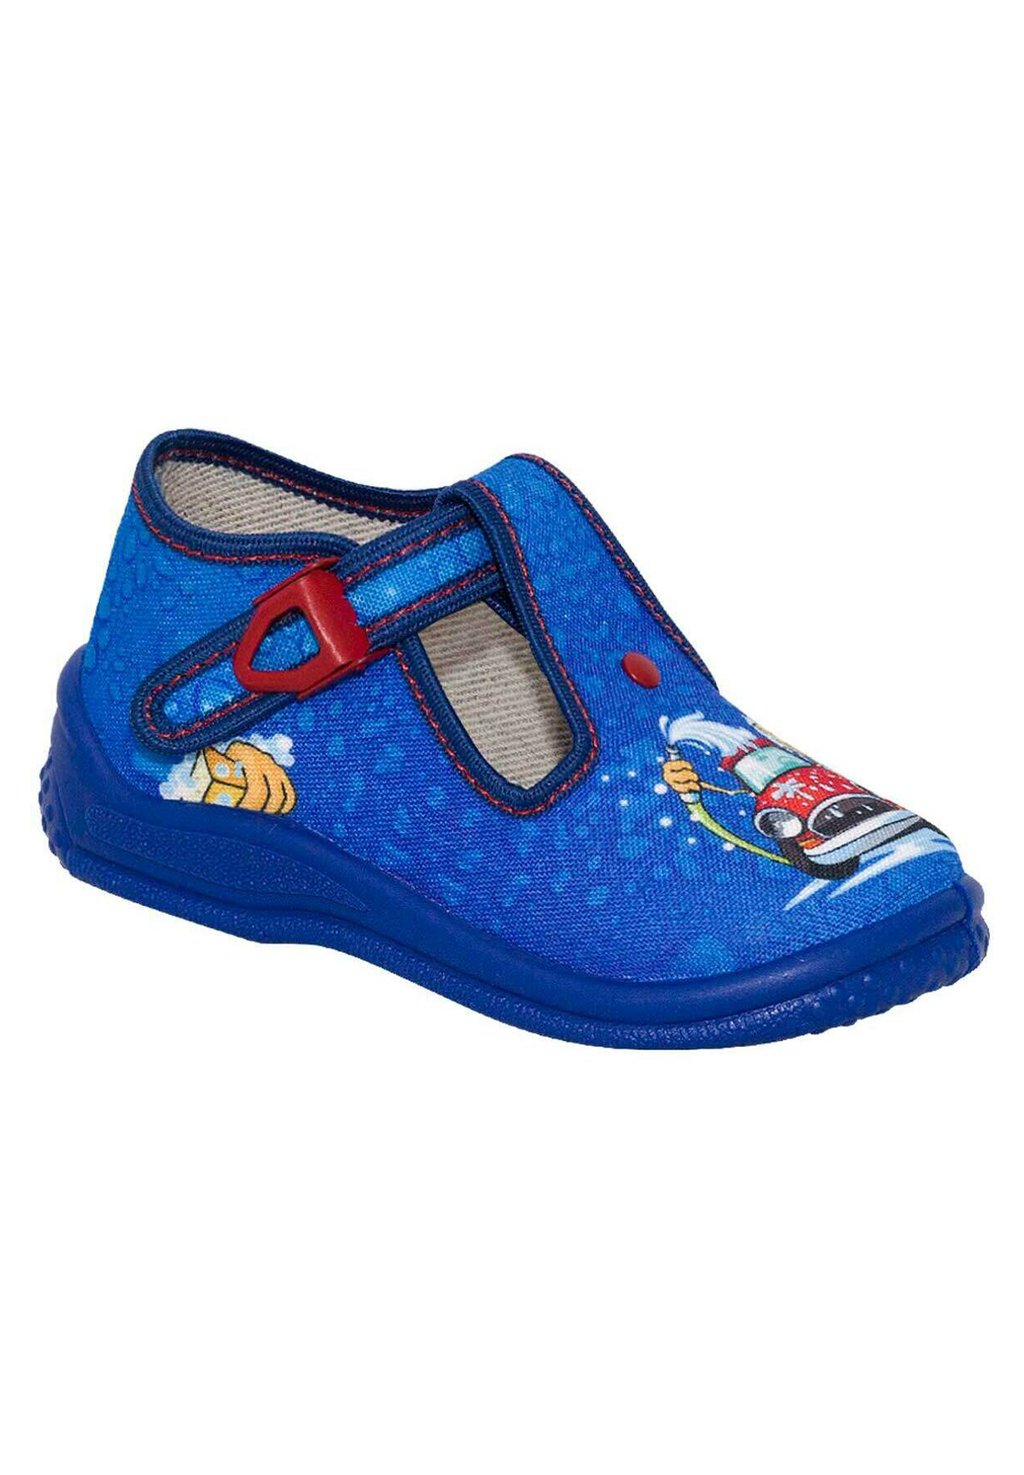 Обувь для ползания Zetpol, синий обувь для ползания unisex moschino синий деним